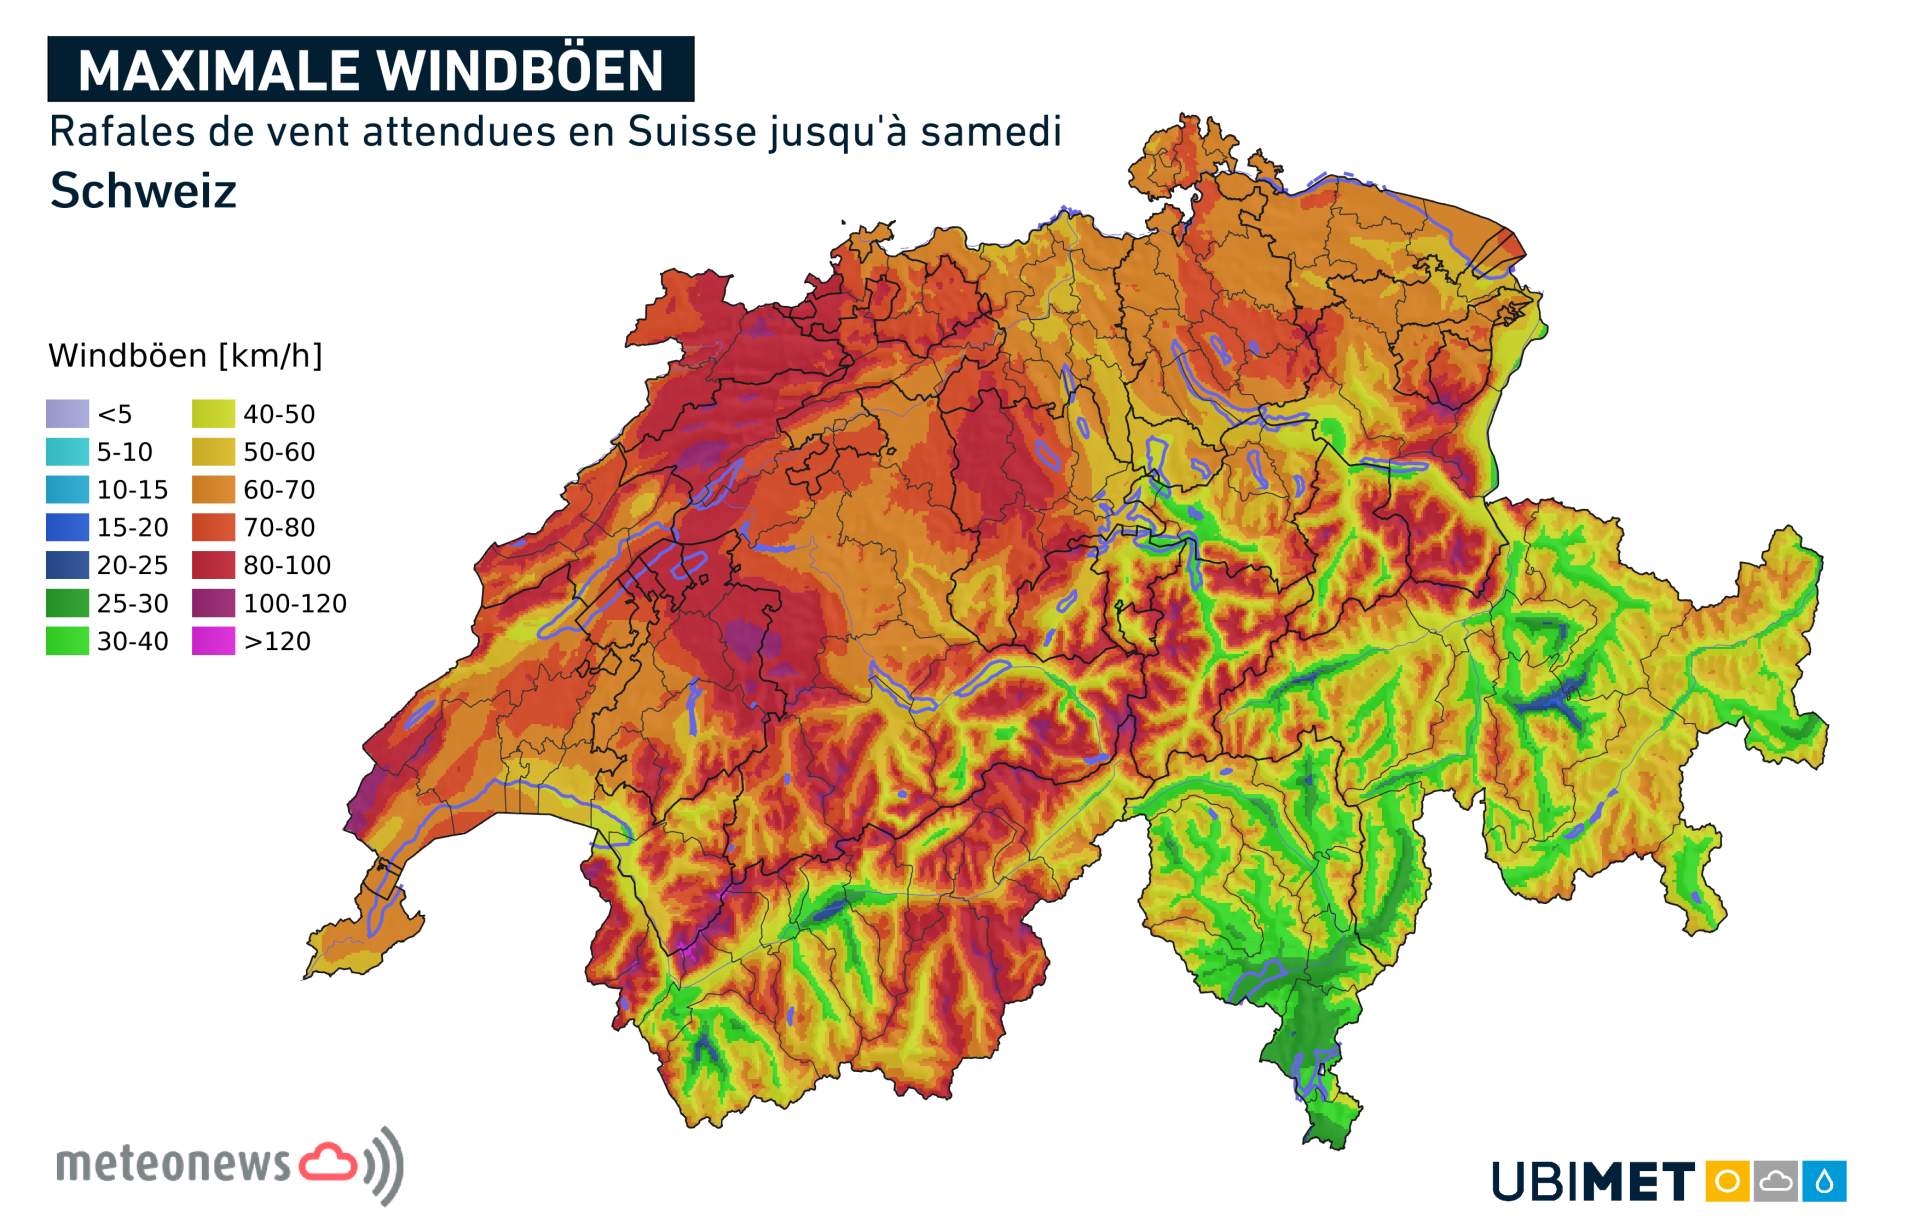 Rafales de vent prévues en Suisse jusqu'à samedi; Source: MeteoNews